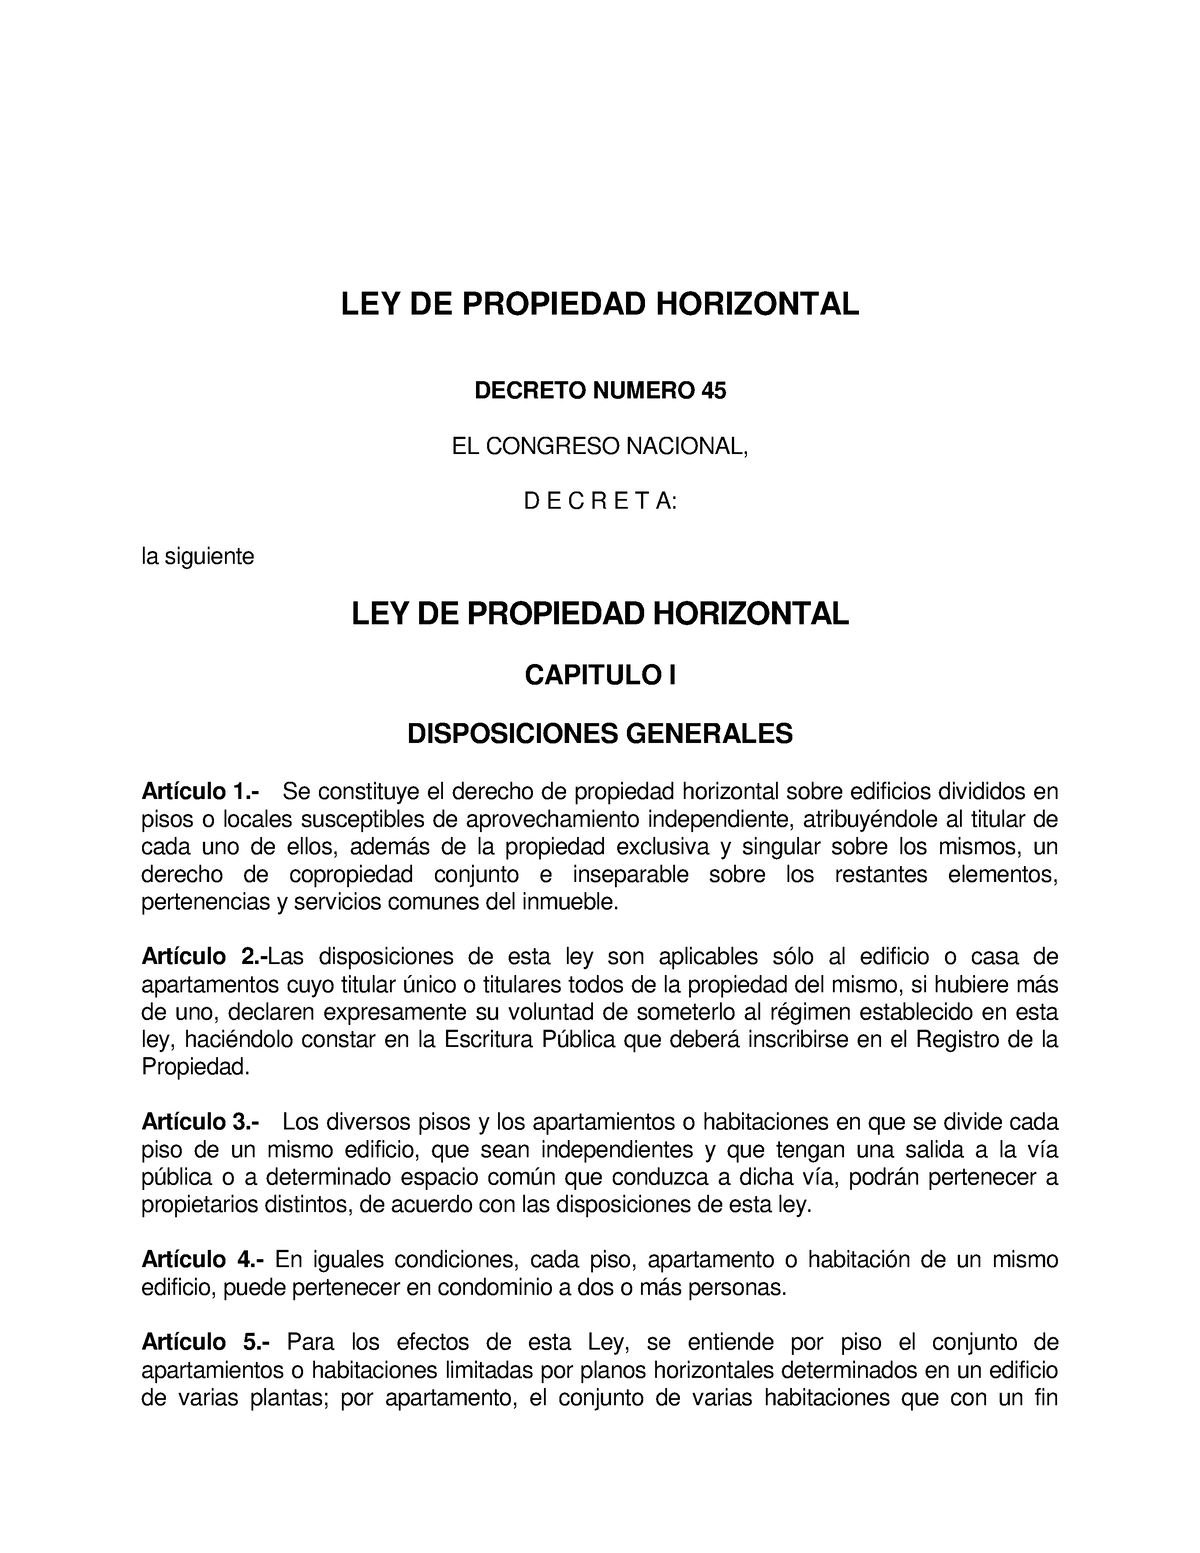 Ley de Propiedad Horizontal LEY DE PROPIEDAD HORIZONTAL DECRETO